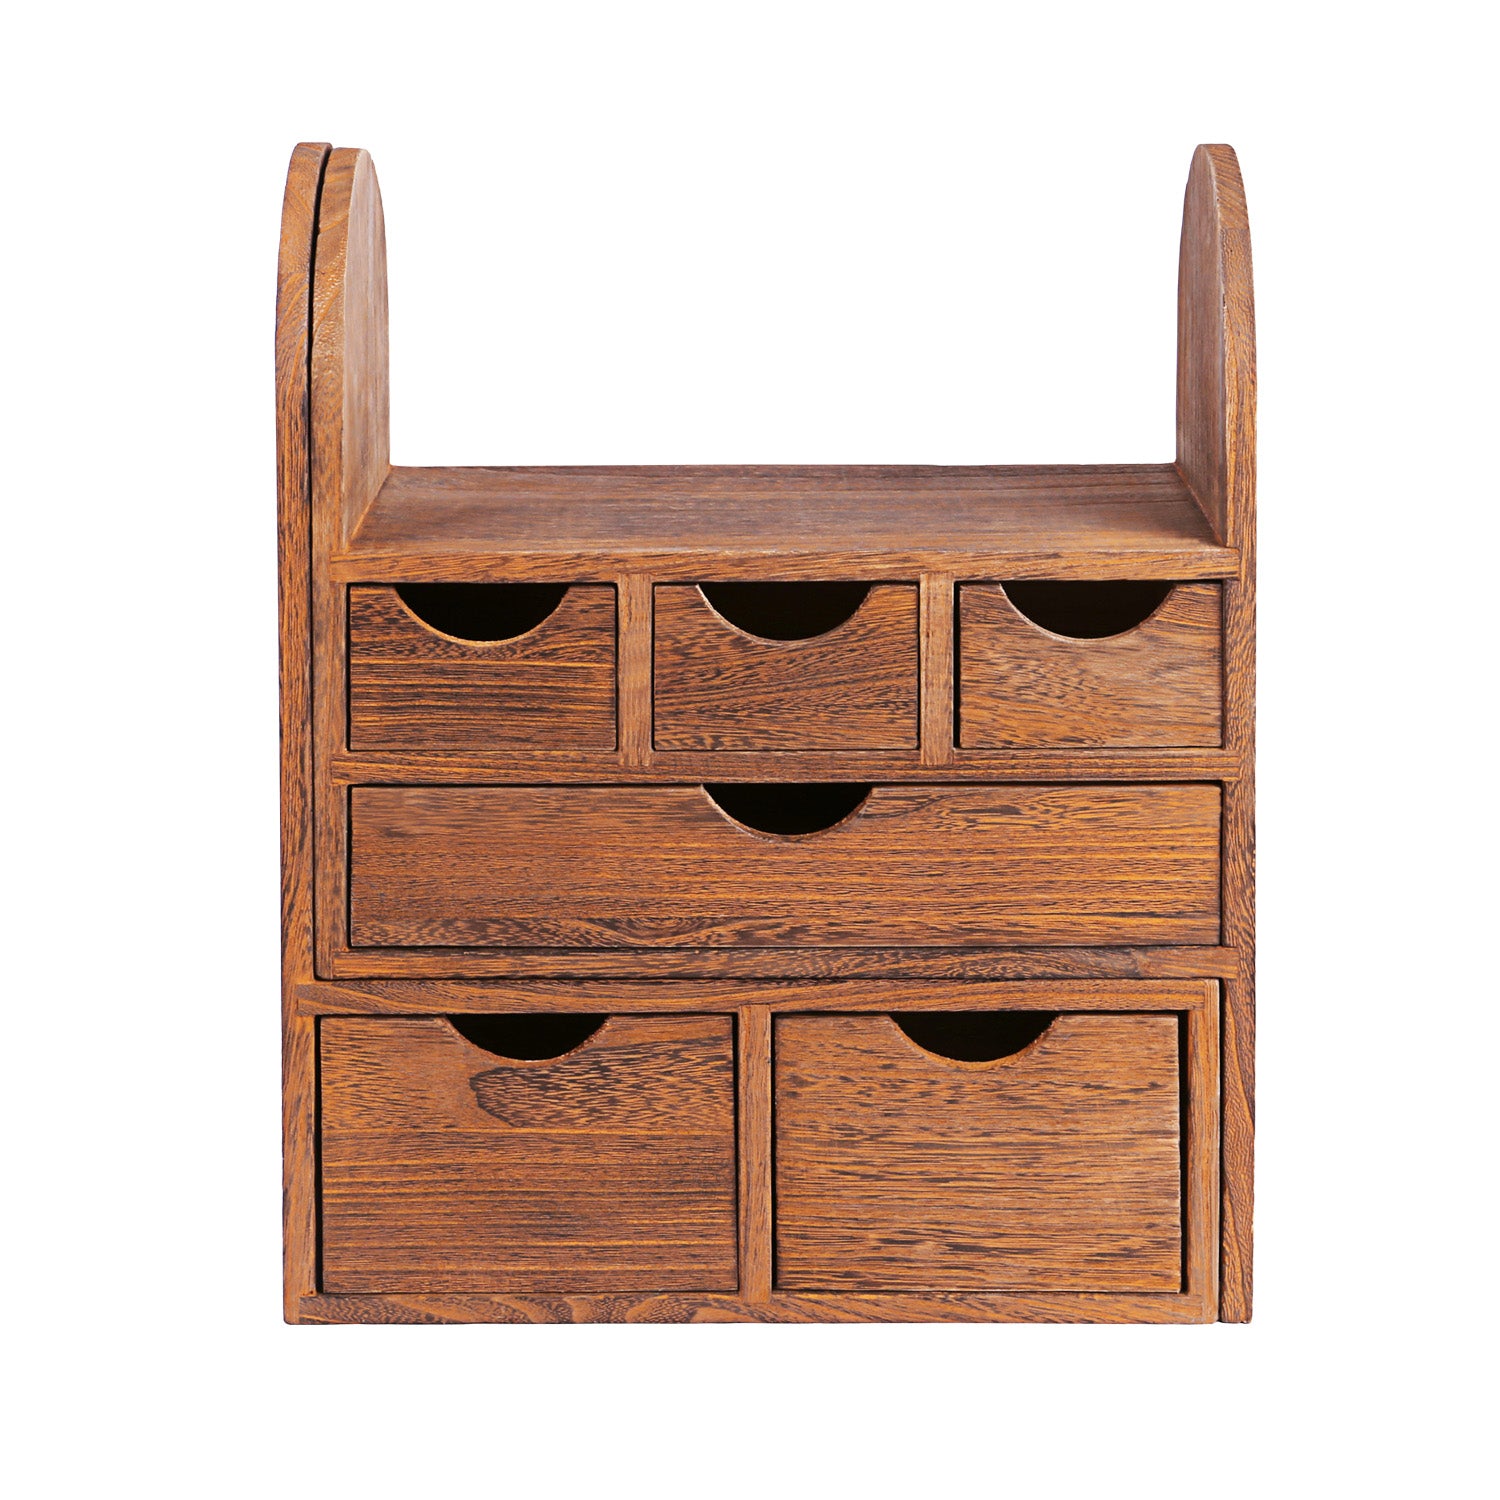 #SAT307BR Large Adjustable Wooden Desktop Organizer for Office Supplies